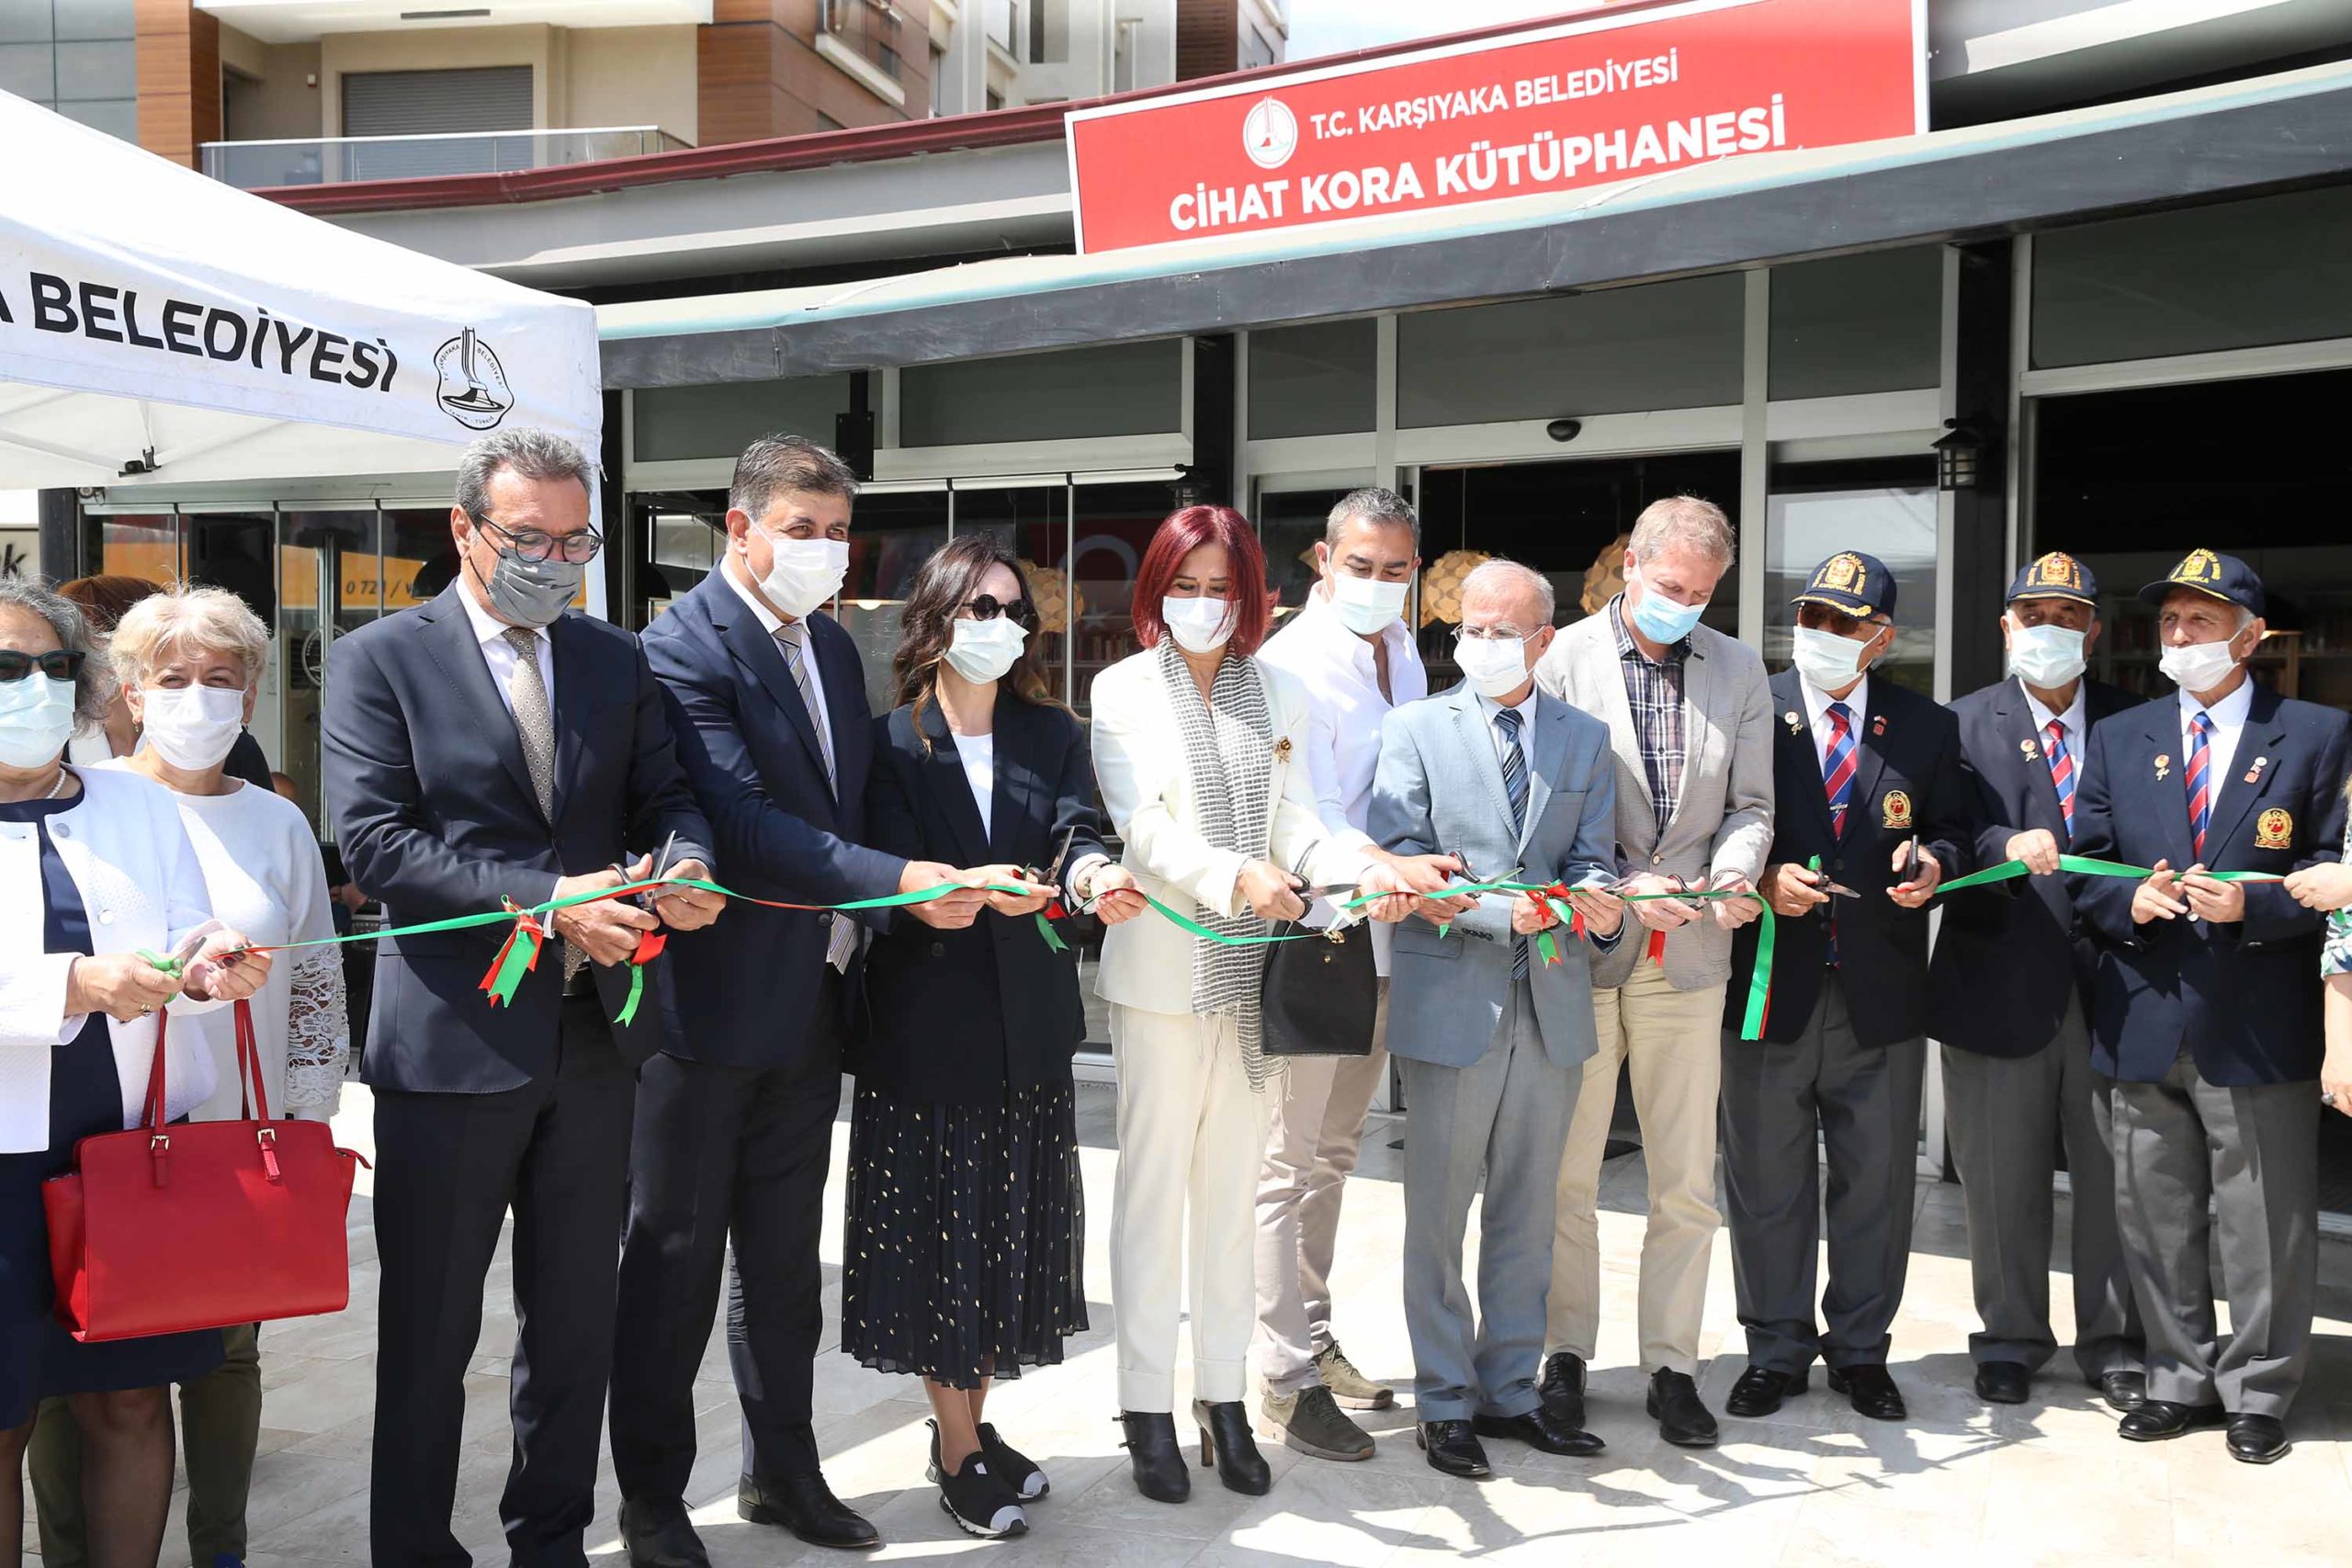  Karşıyaka’da Cihat Kora Kütüphanesi Hizmete Açıldı